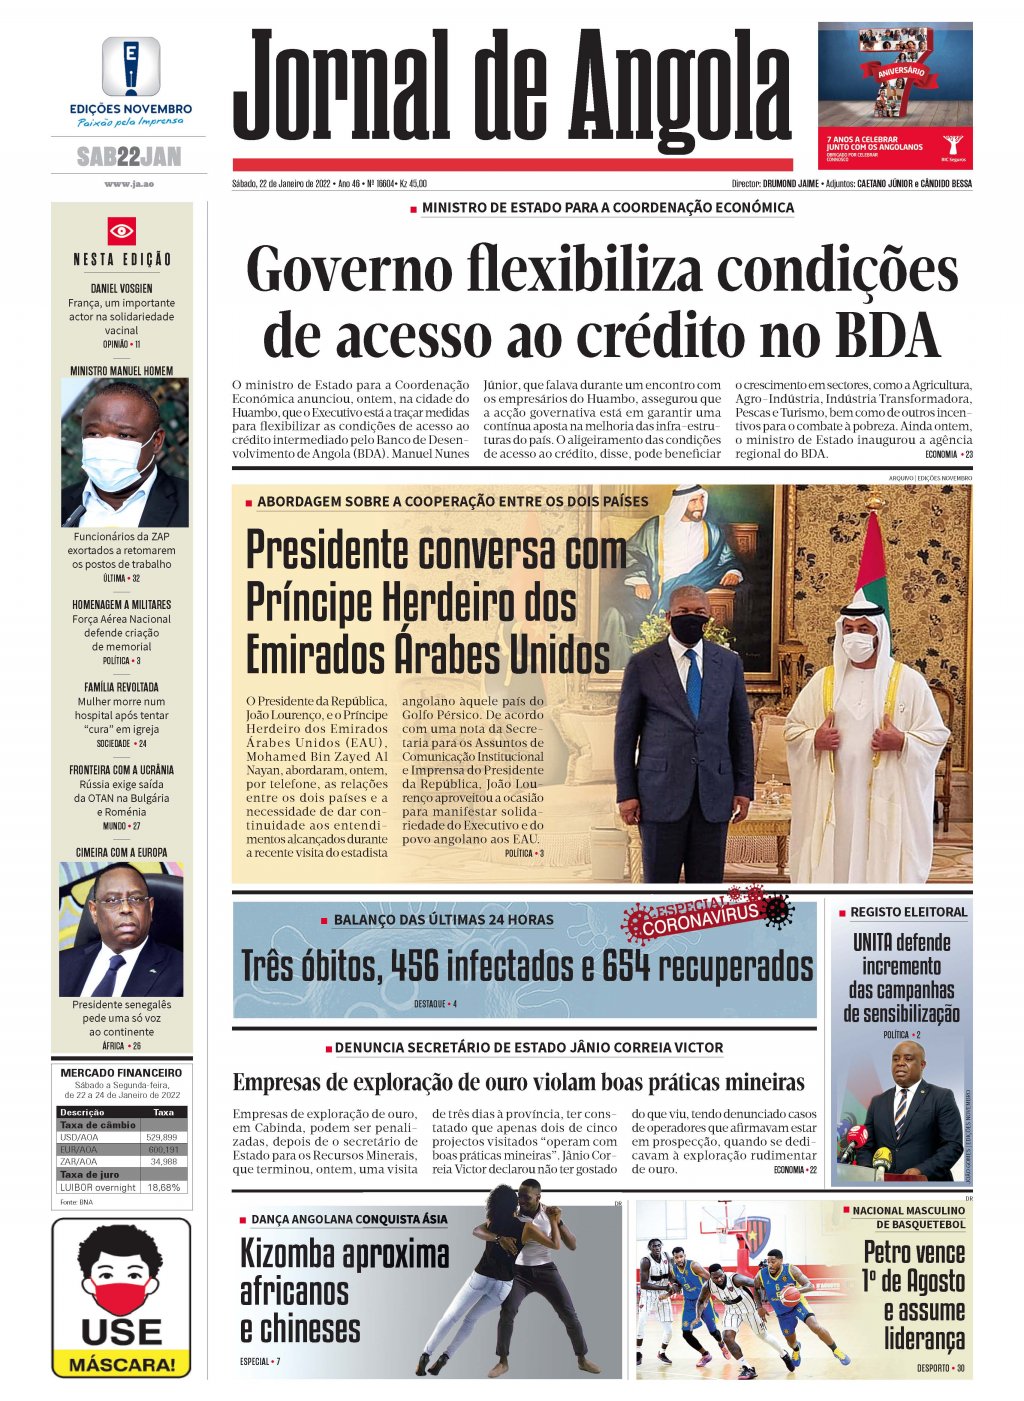 Jornal de Angola - Notícias - 1º de Agosto descarta qualquer